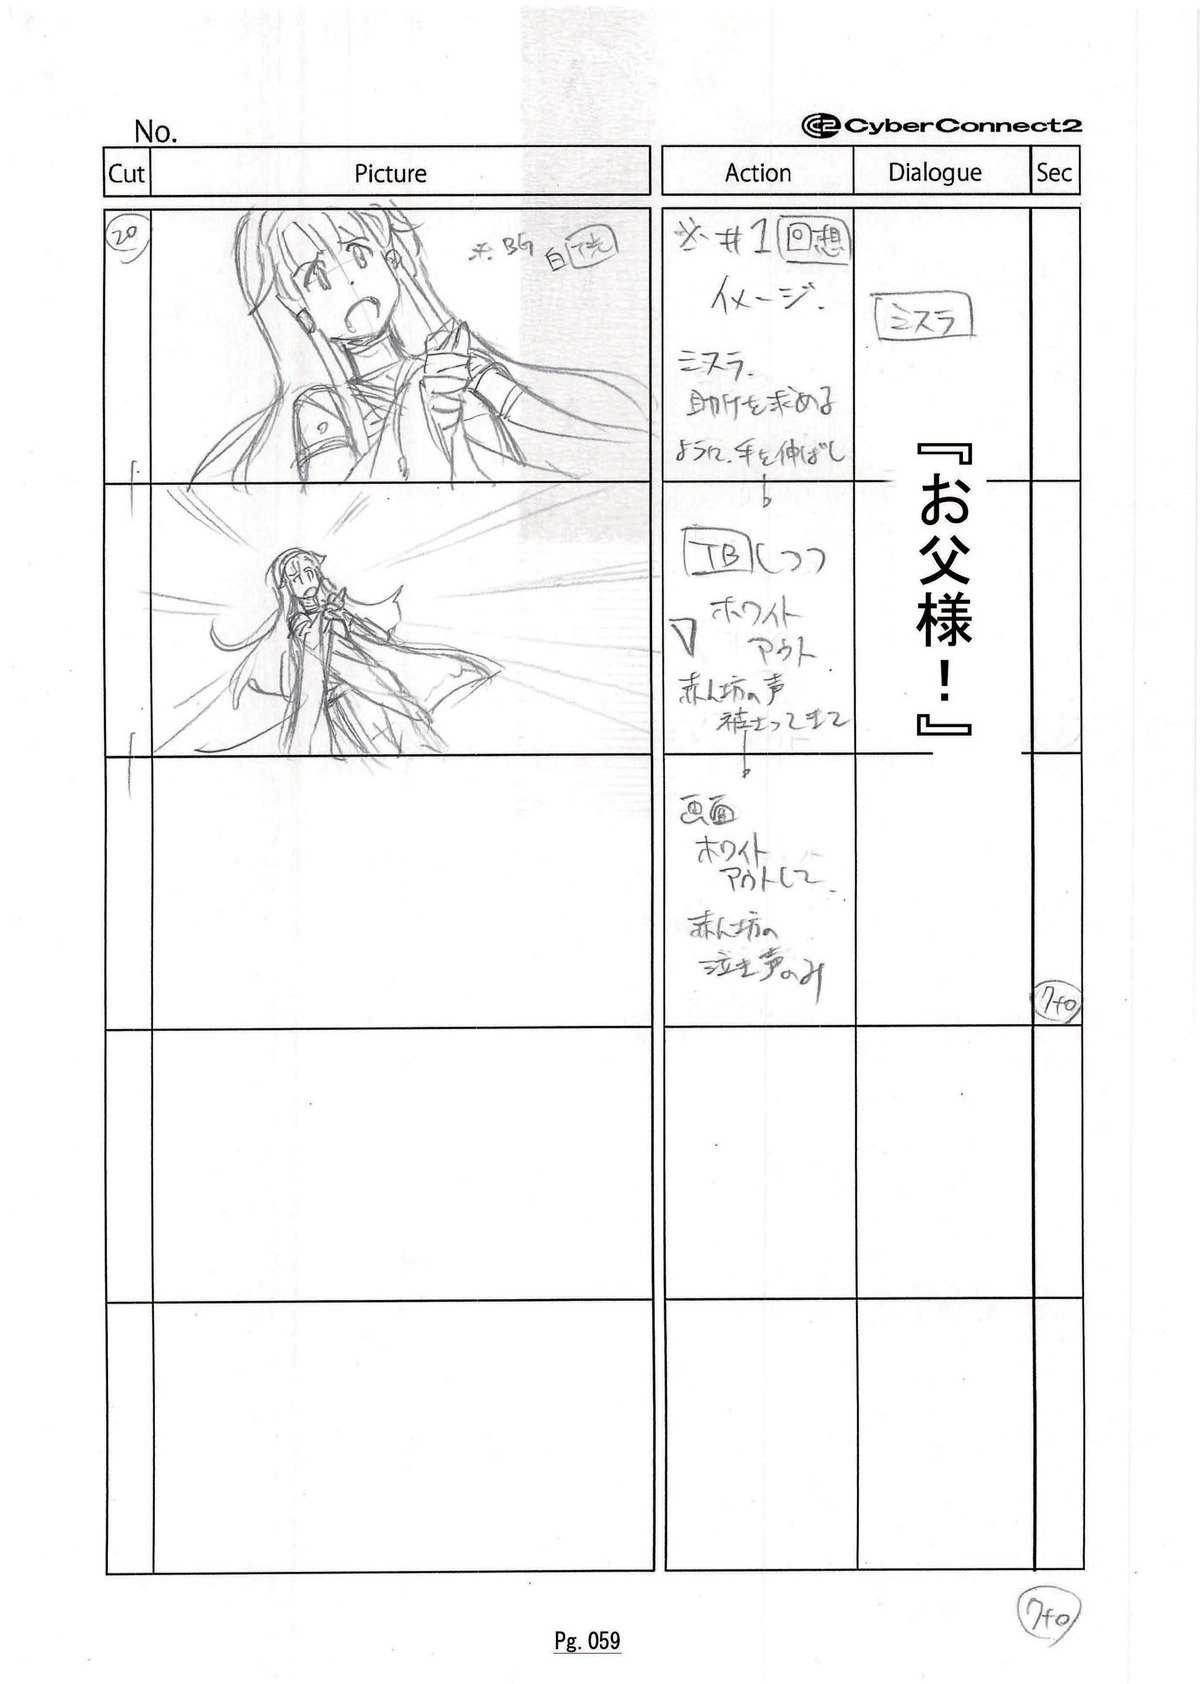 asura_wrath_(video_game) masatoshi_hakata production_materials storyboard